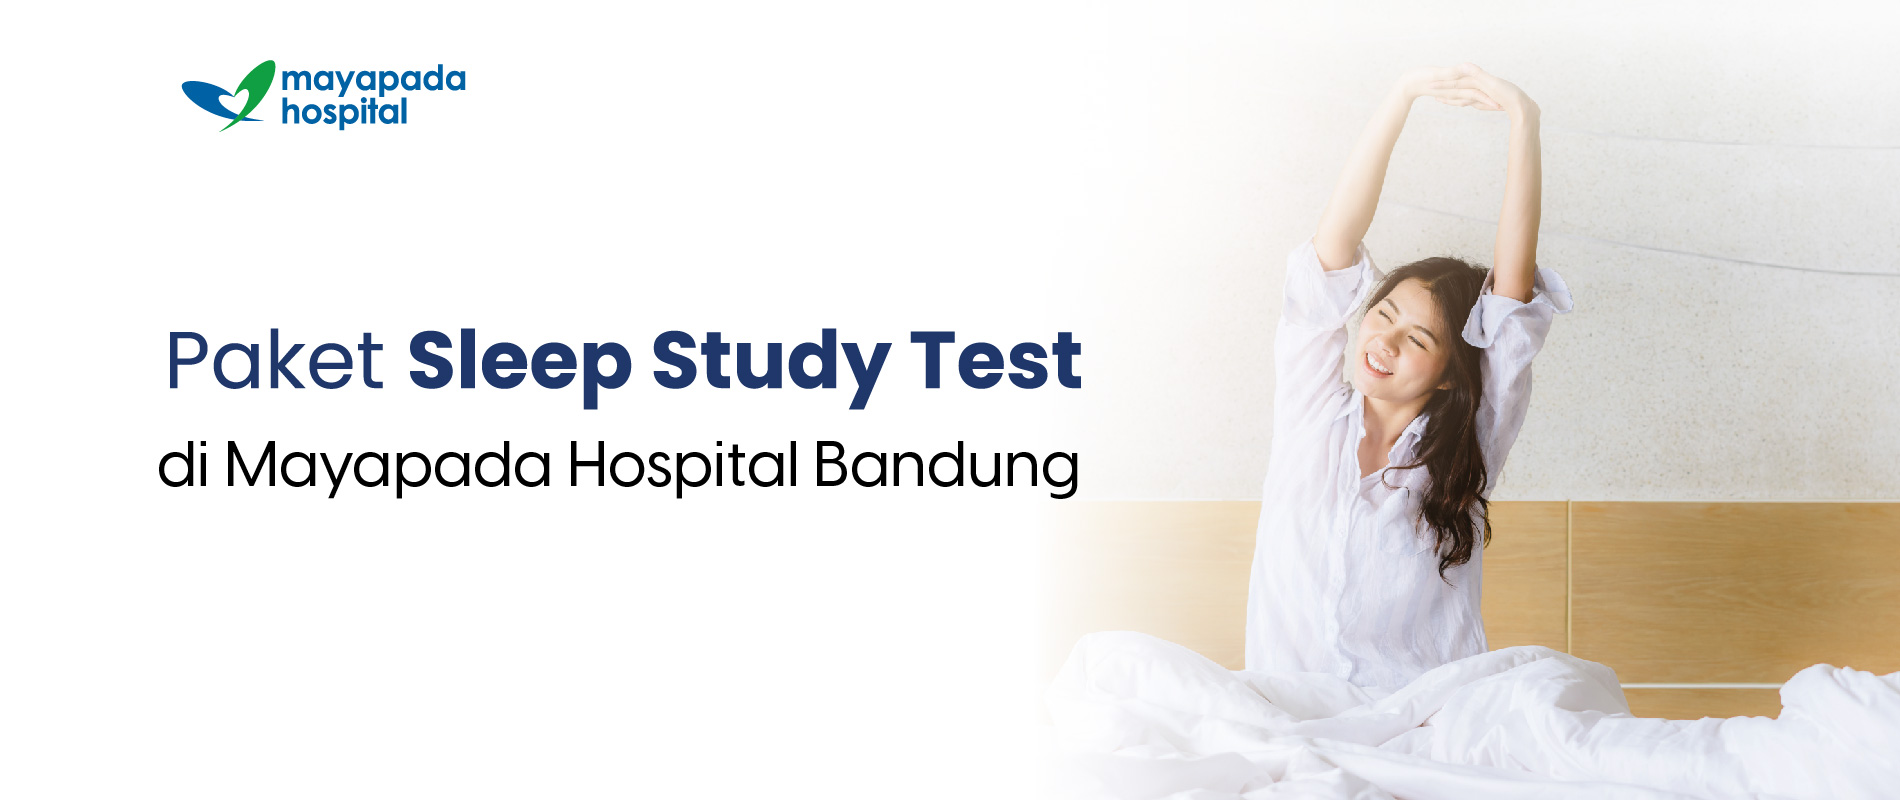 Promo Sleep Study Test Mayapada Hospital Bandung (MHBD) IMG